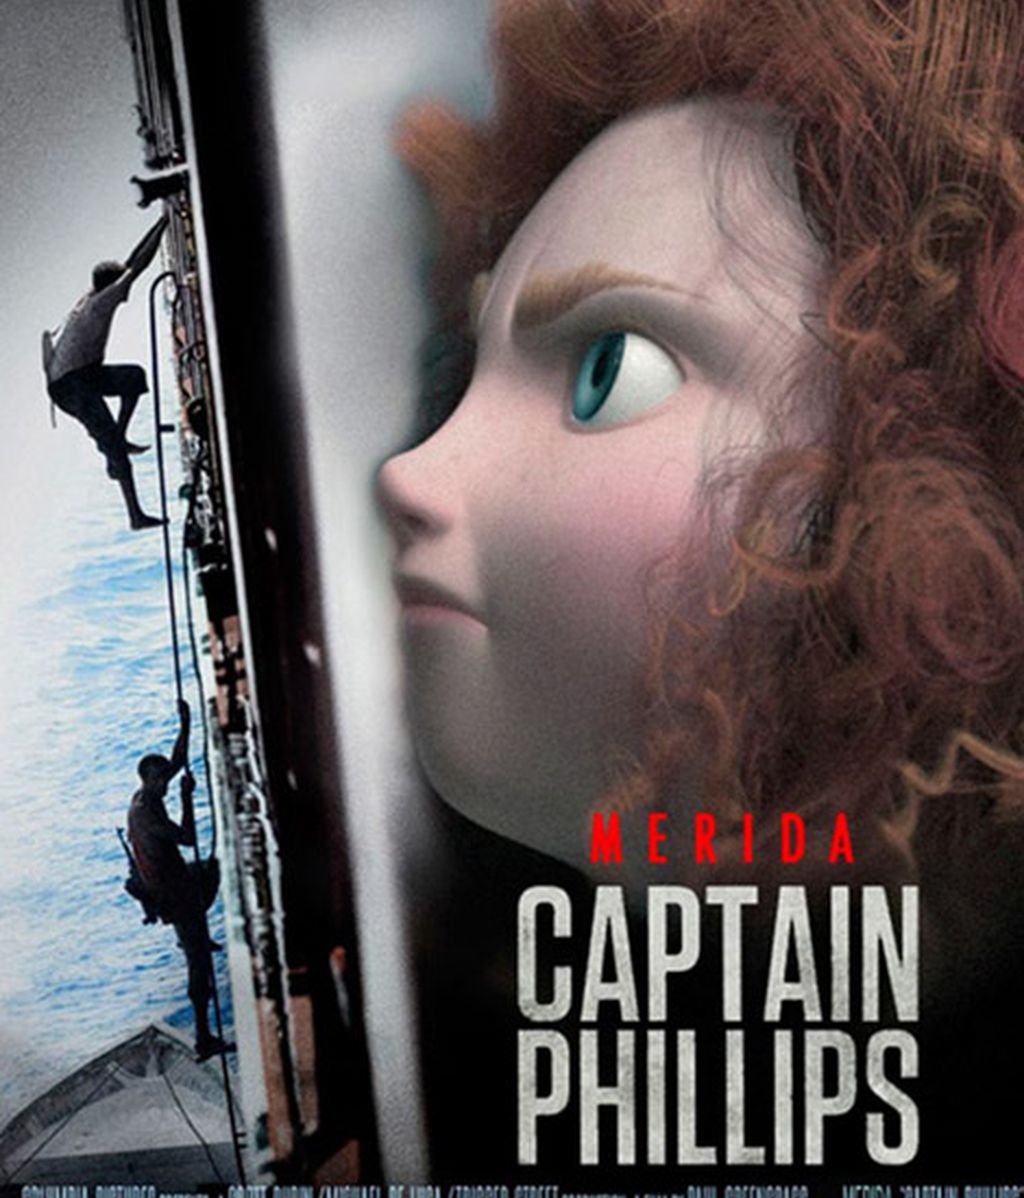 Oscars 2014: Nominadas versión Pixar